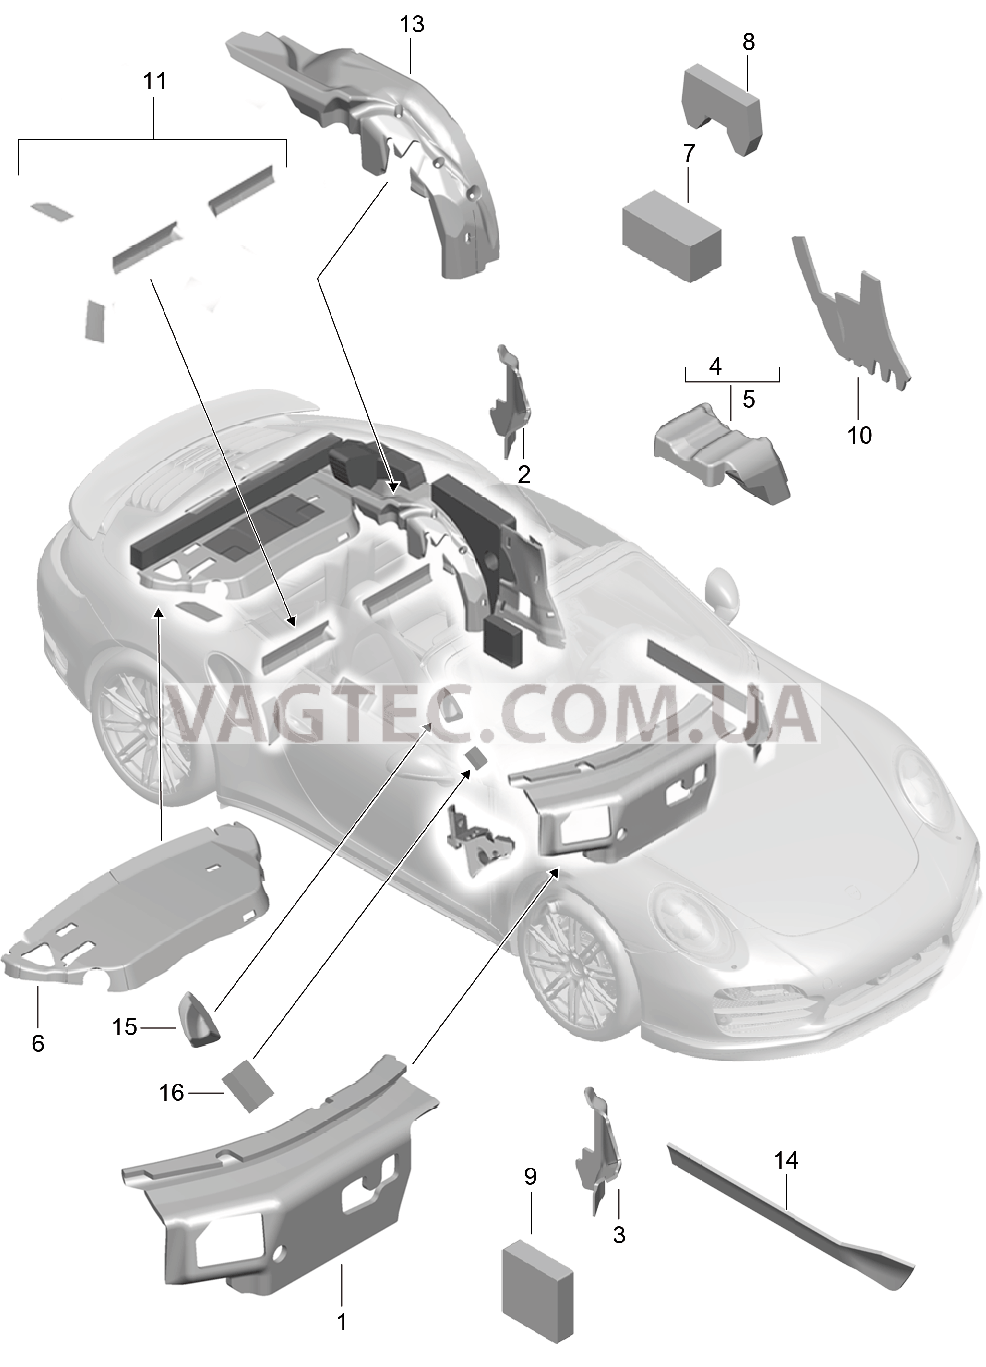 807-082 Кузов, Звукоизоляция 1
						
						CABRIO для PORSCHE Porsche991Turbo 2014-2017